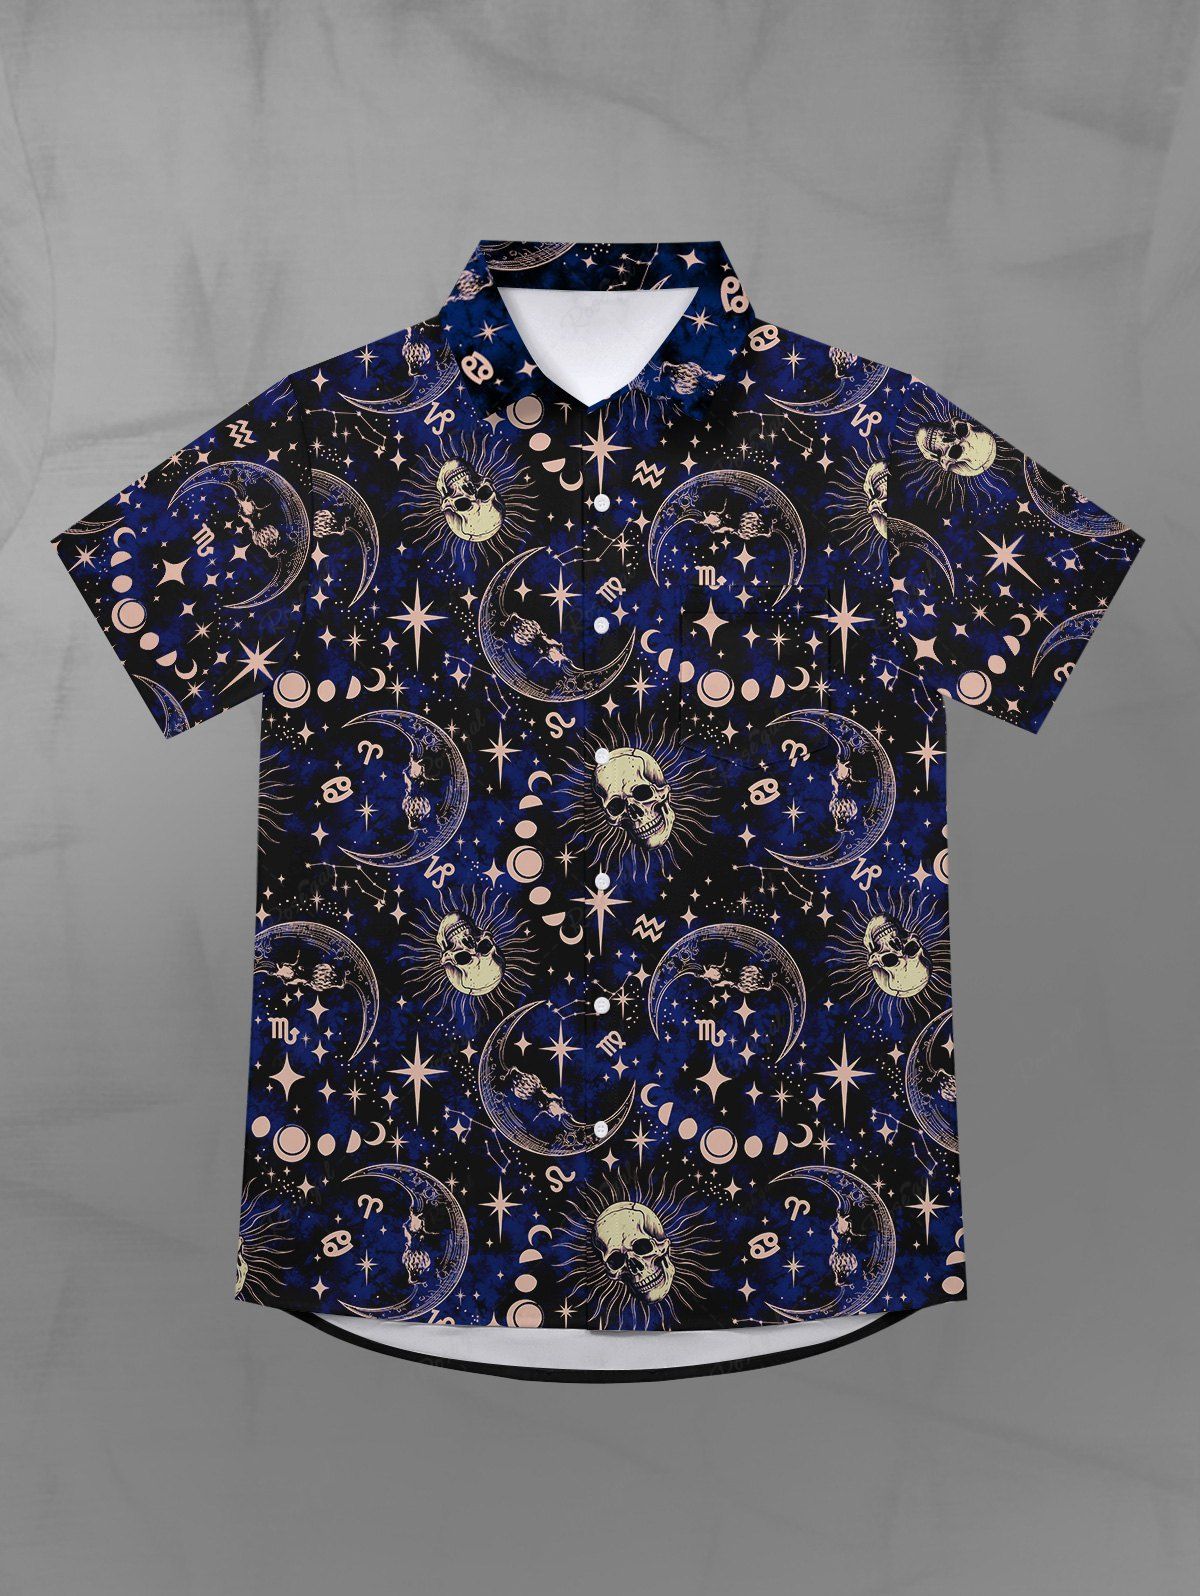 Fashion Gothic Galaxy Skull Sun Moon Star Print Button Down Shirt For Men  